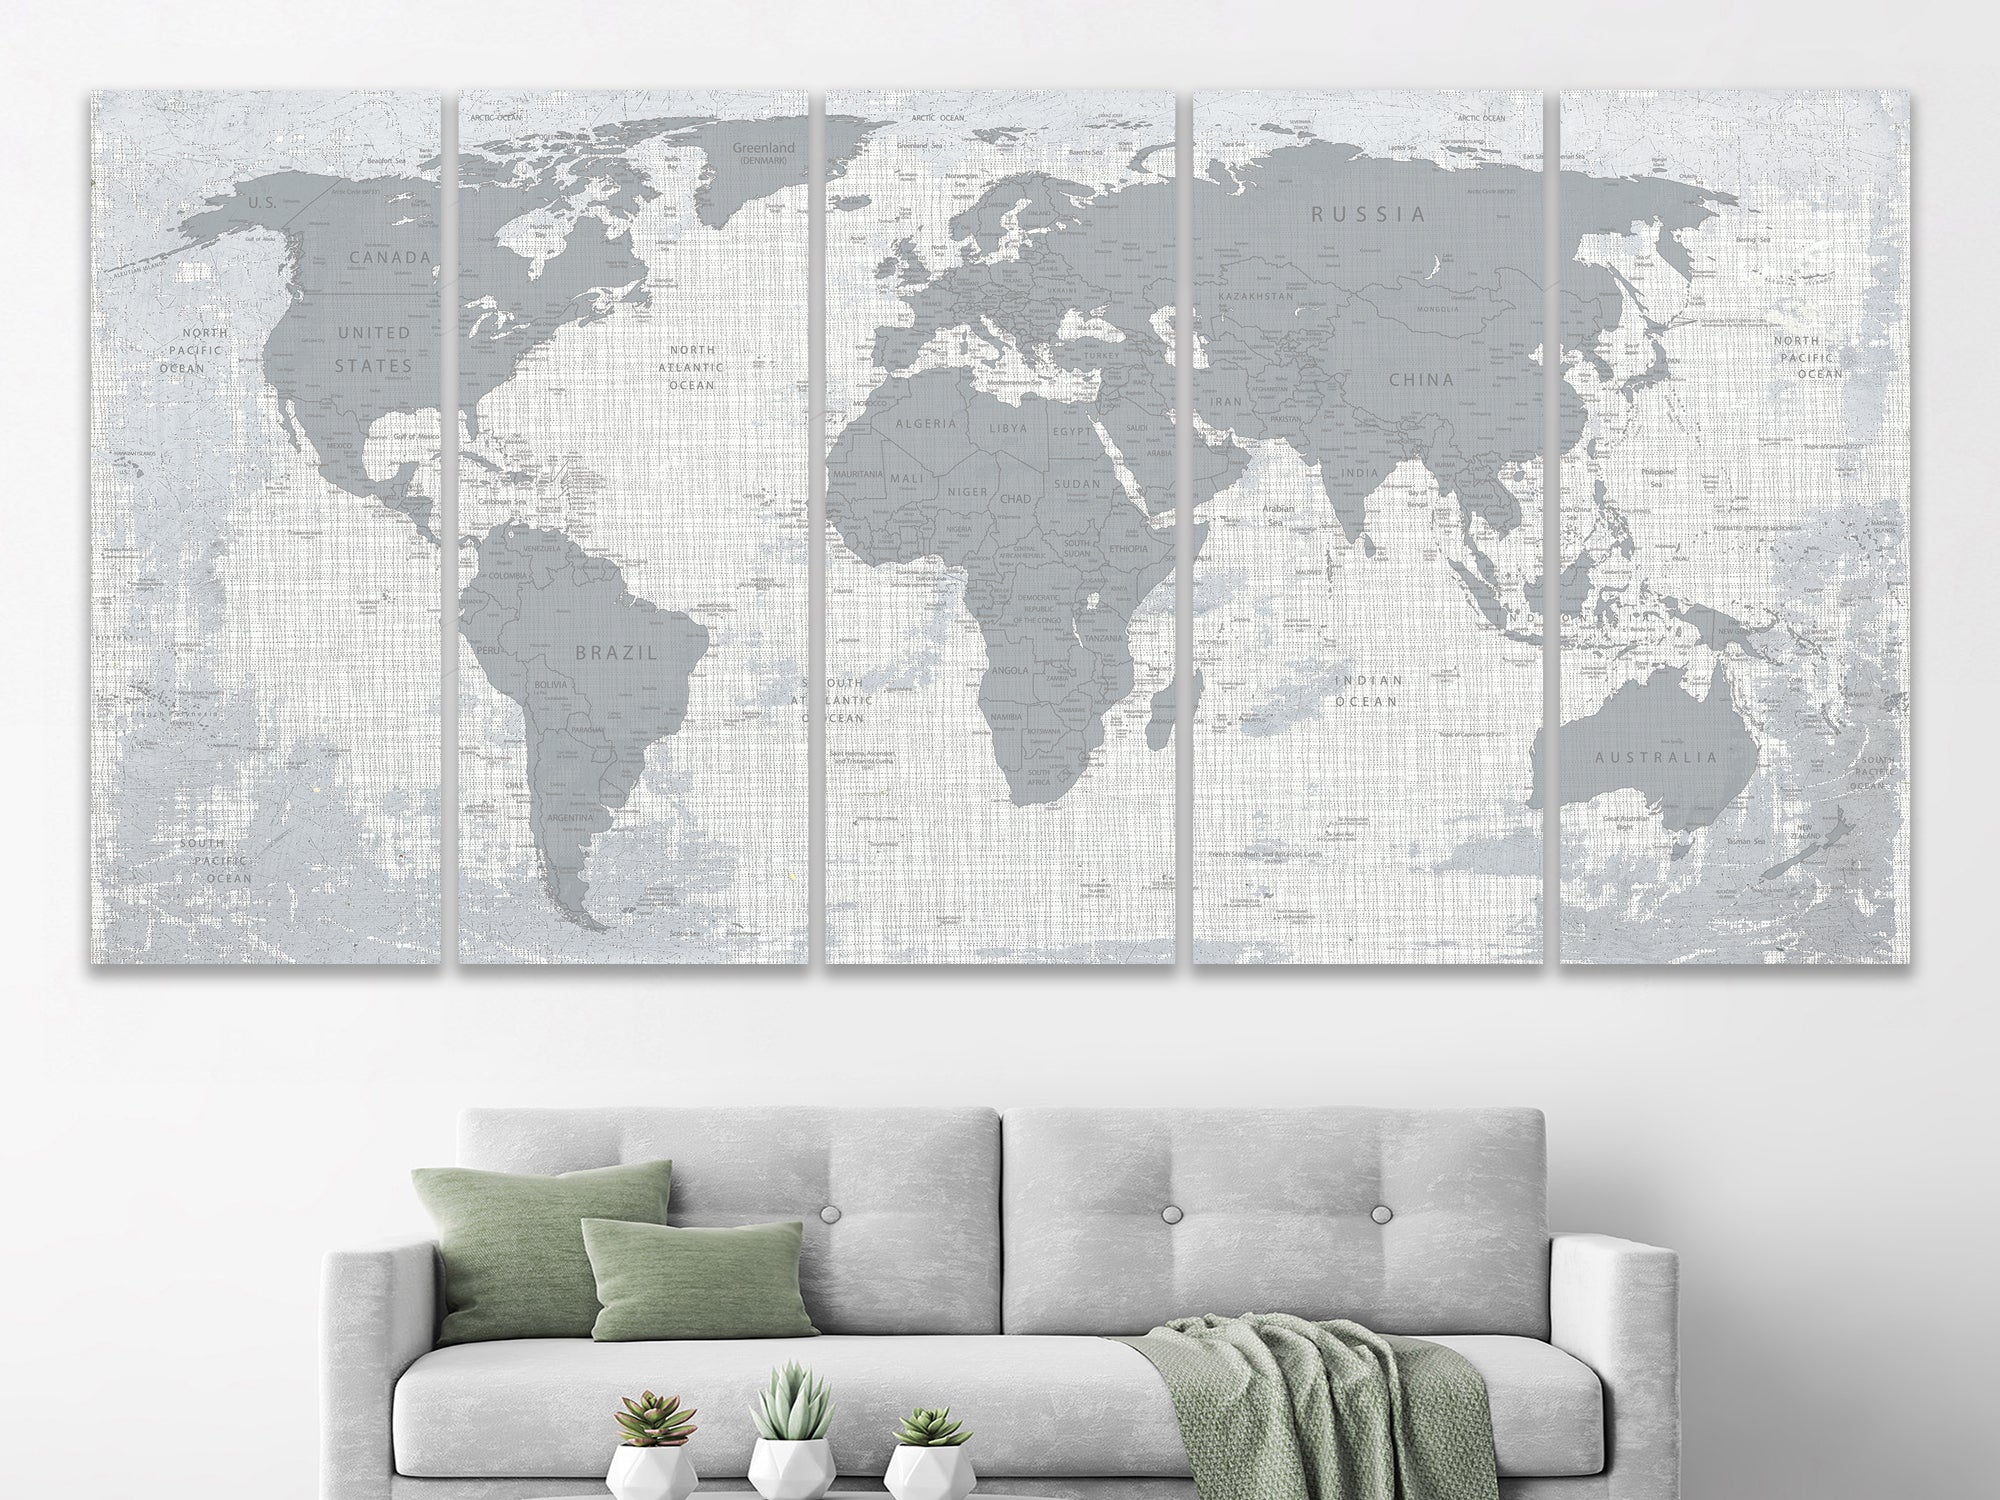 Мапа світу, друк на полотні